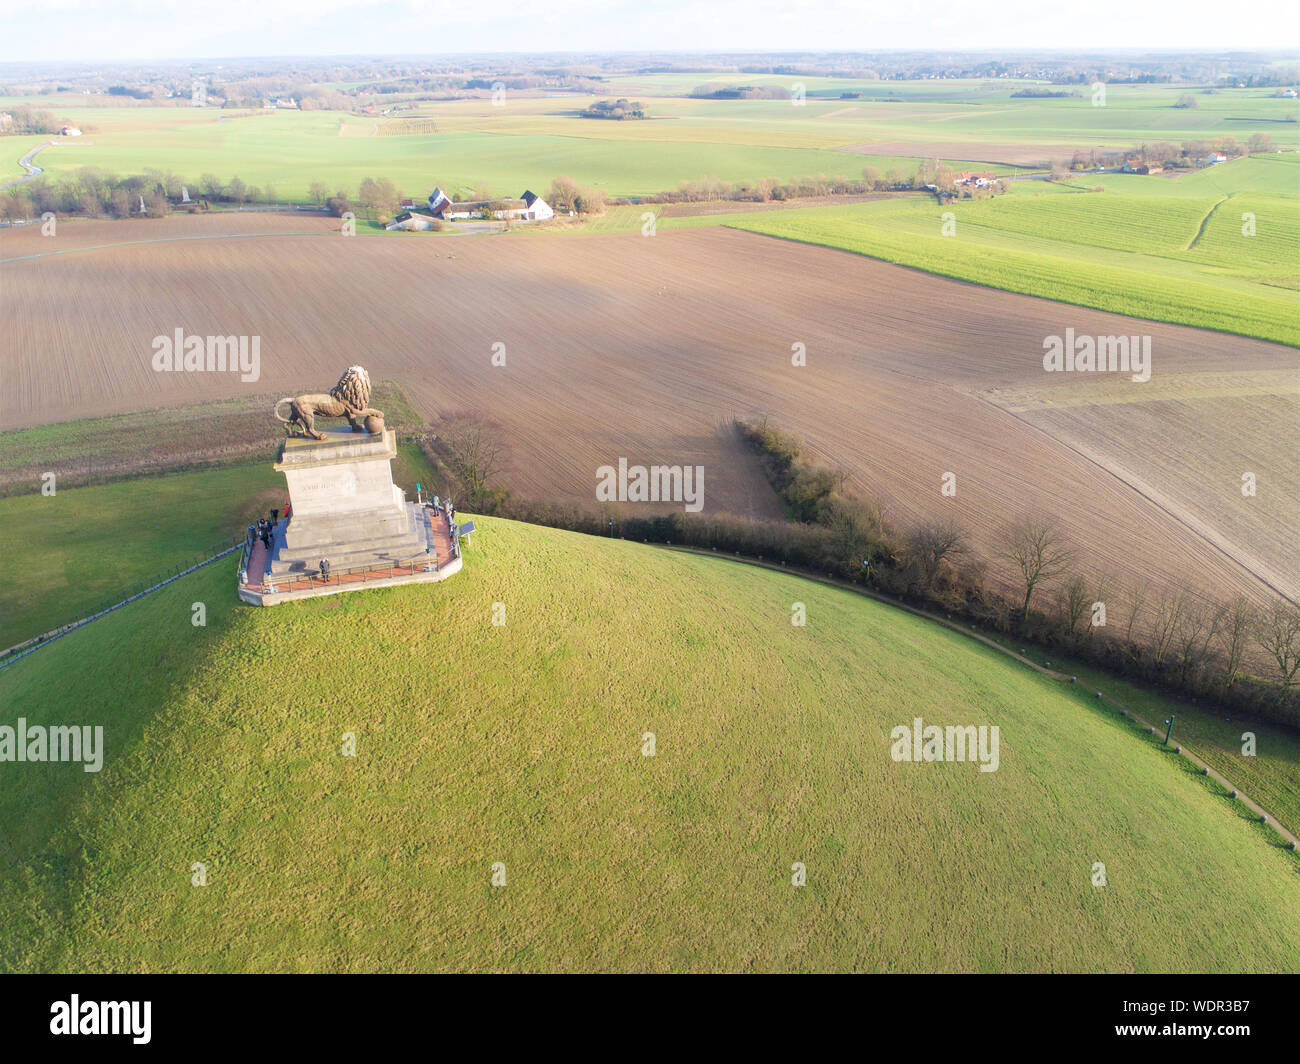 Luftaufnahme der Damm des Löwen mit Farm Land um. Die immense Butte du Lion auf dem Schlachtfeld von Waterloo, wo Napoleon starb. Belgien. Stockfoto